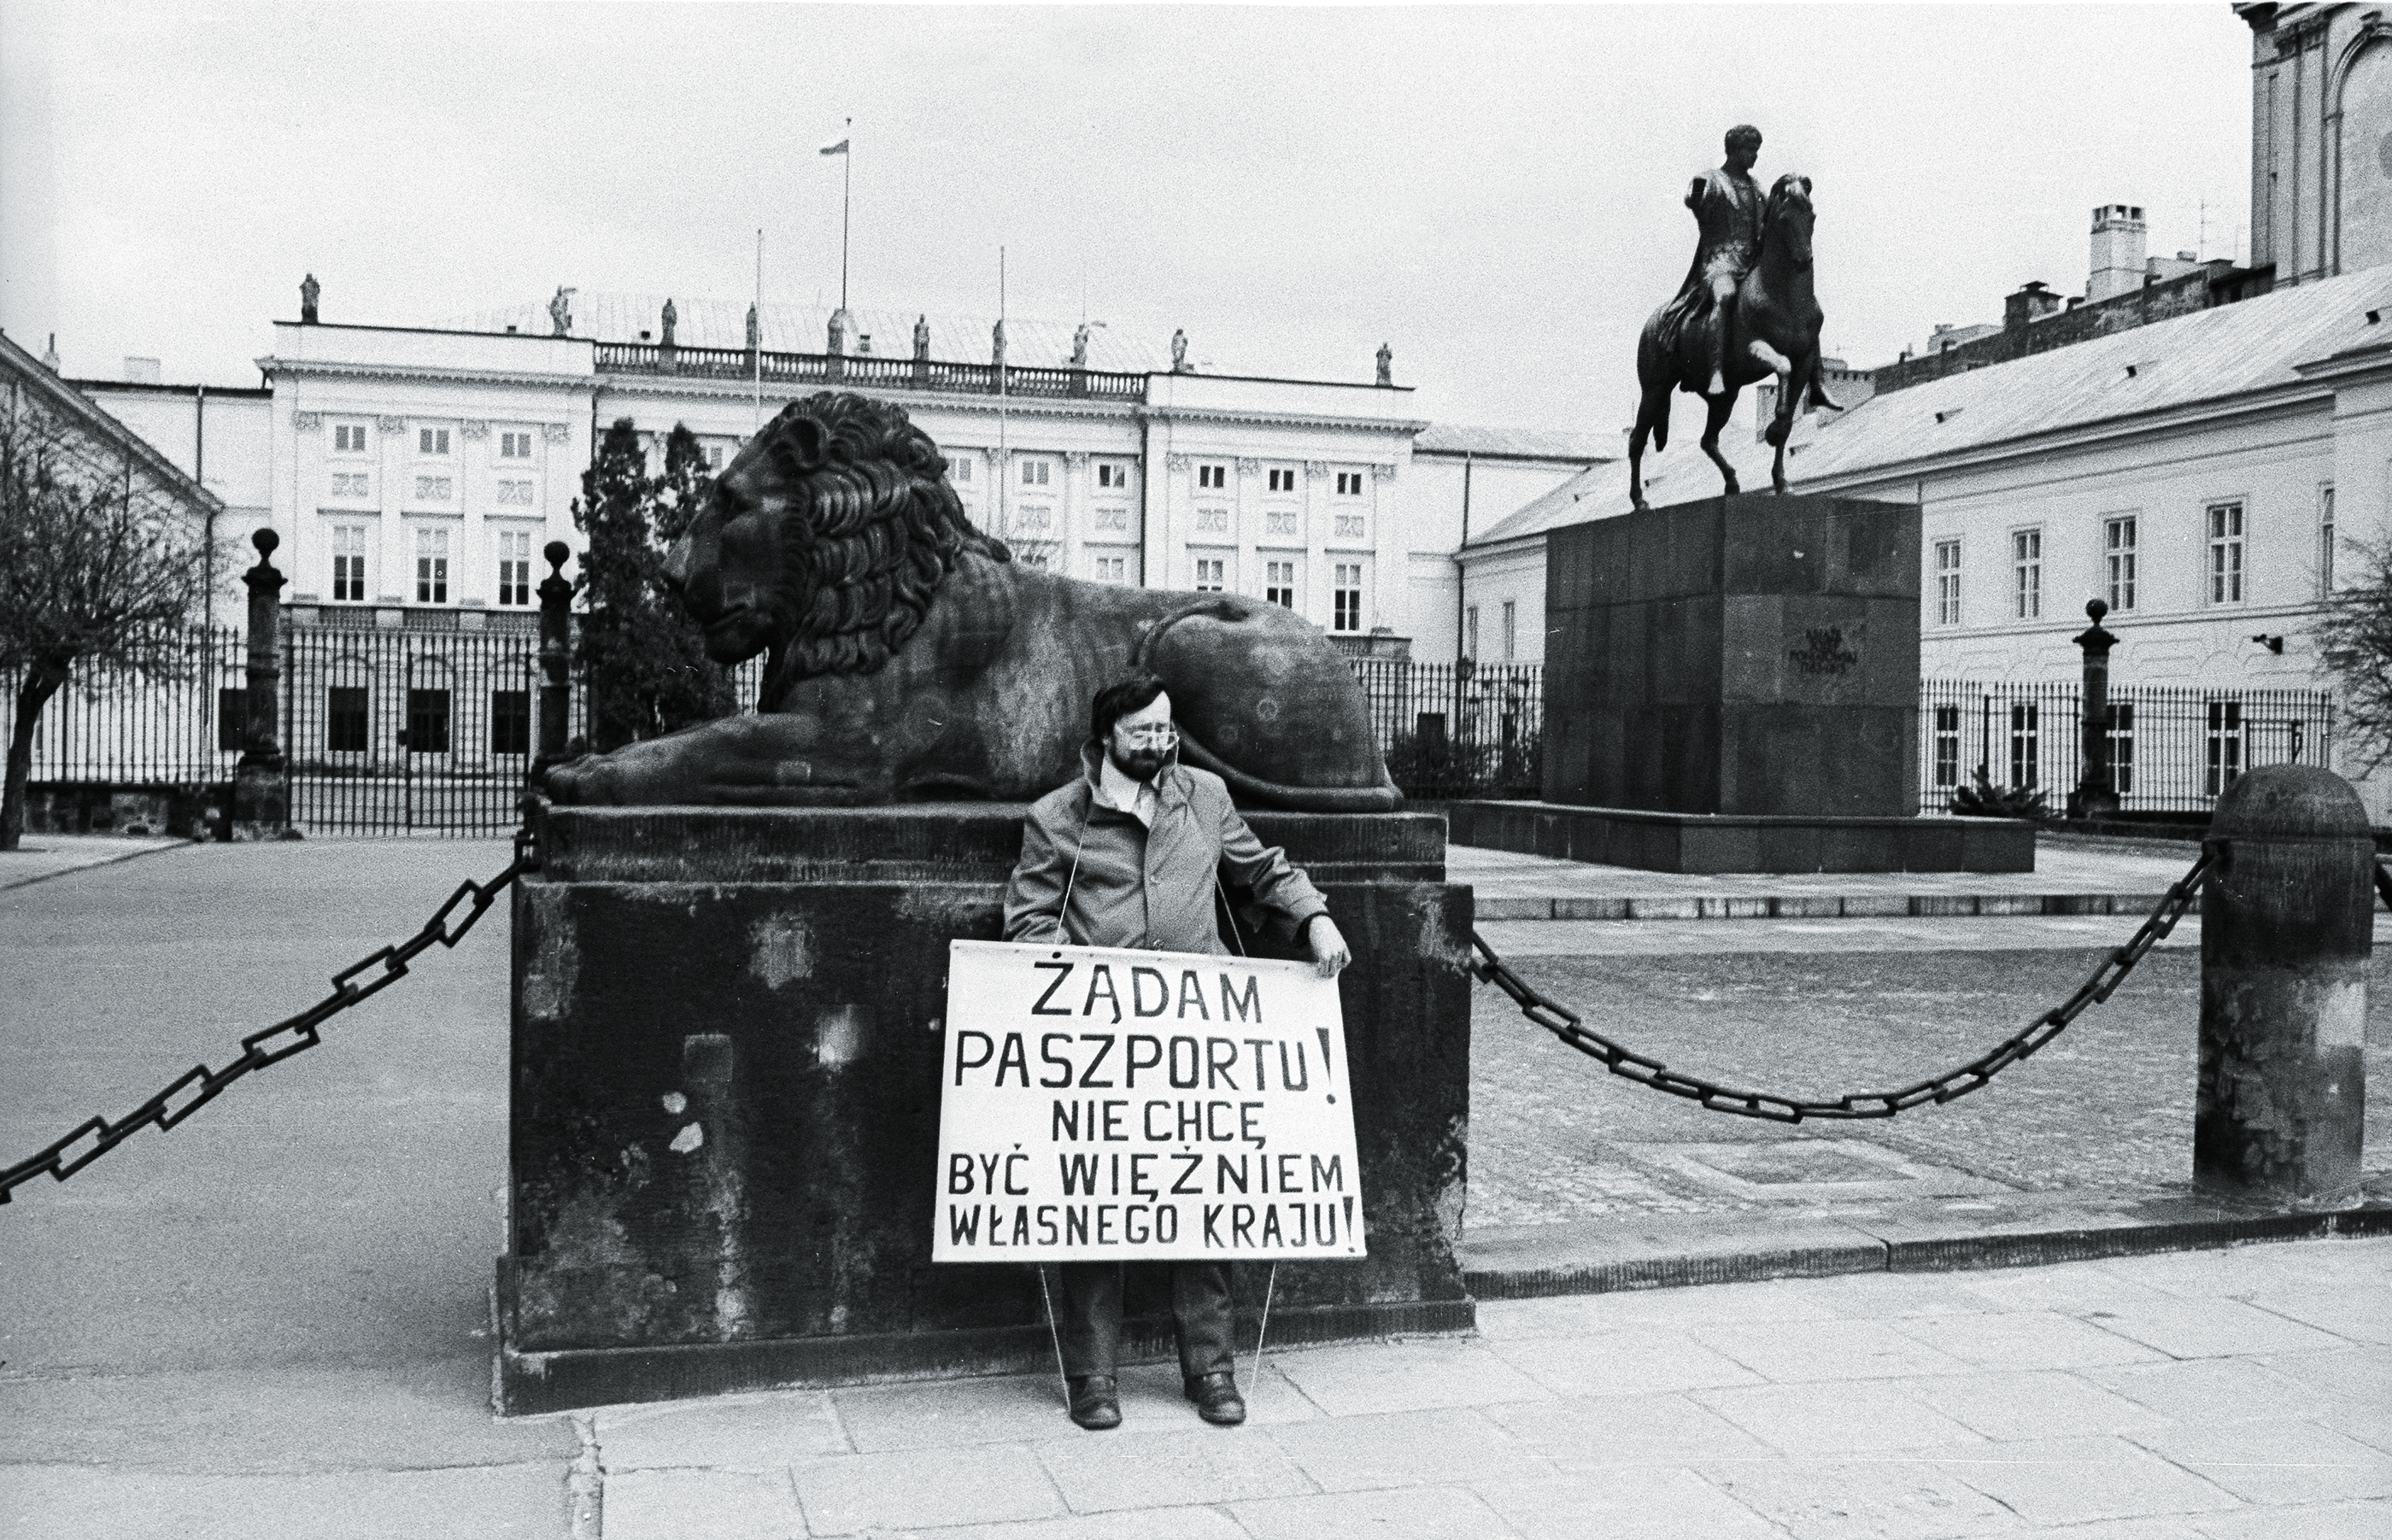 Po przyjeździe z zagranicy każdy obywatel musiał zwrócić paszport w lokalnej komendzie milicji. Na zdjęciu akcja protestacyjna, Warszawa 1984 r.